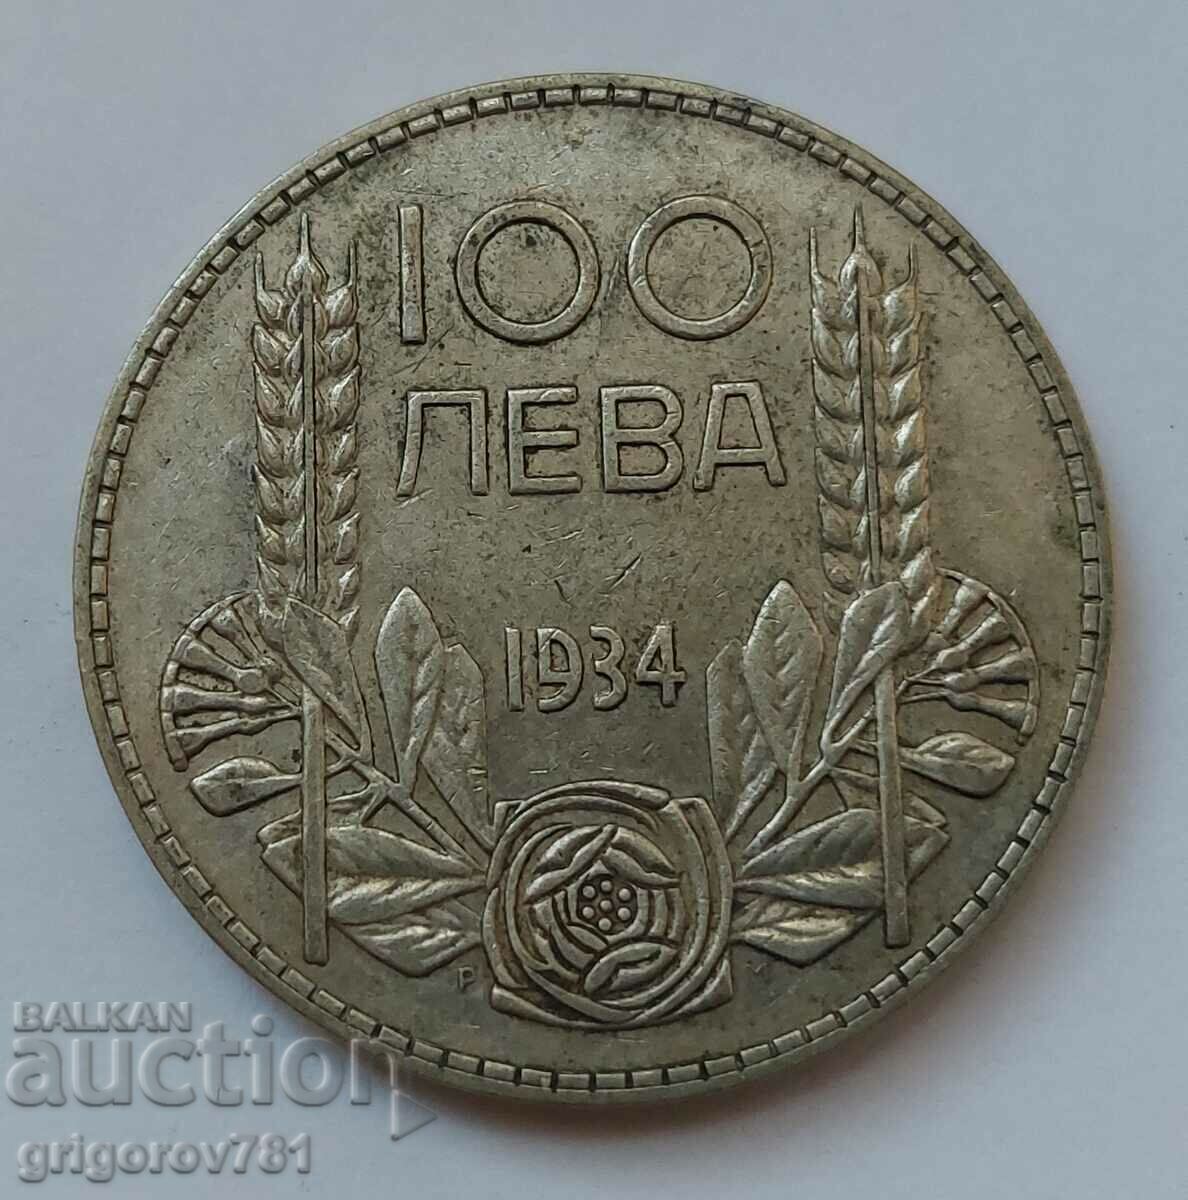 100 leva silver Bulgaria 1934 - silver coin #105